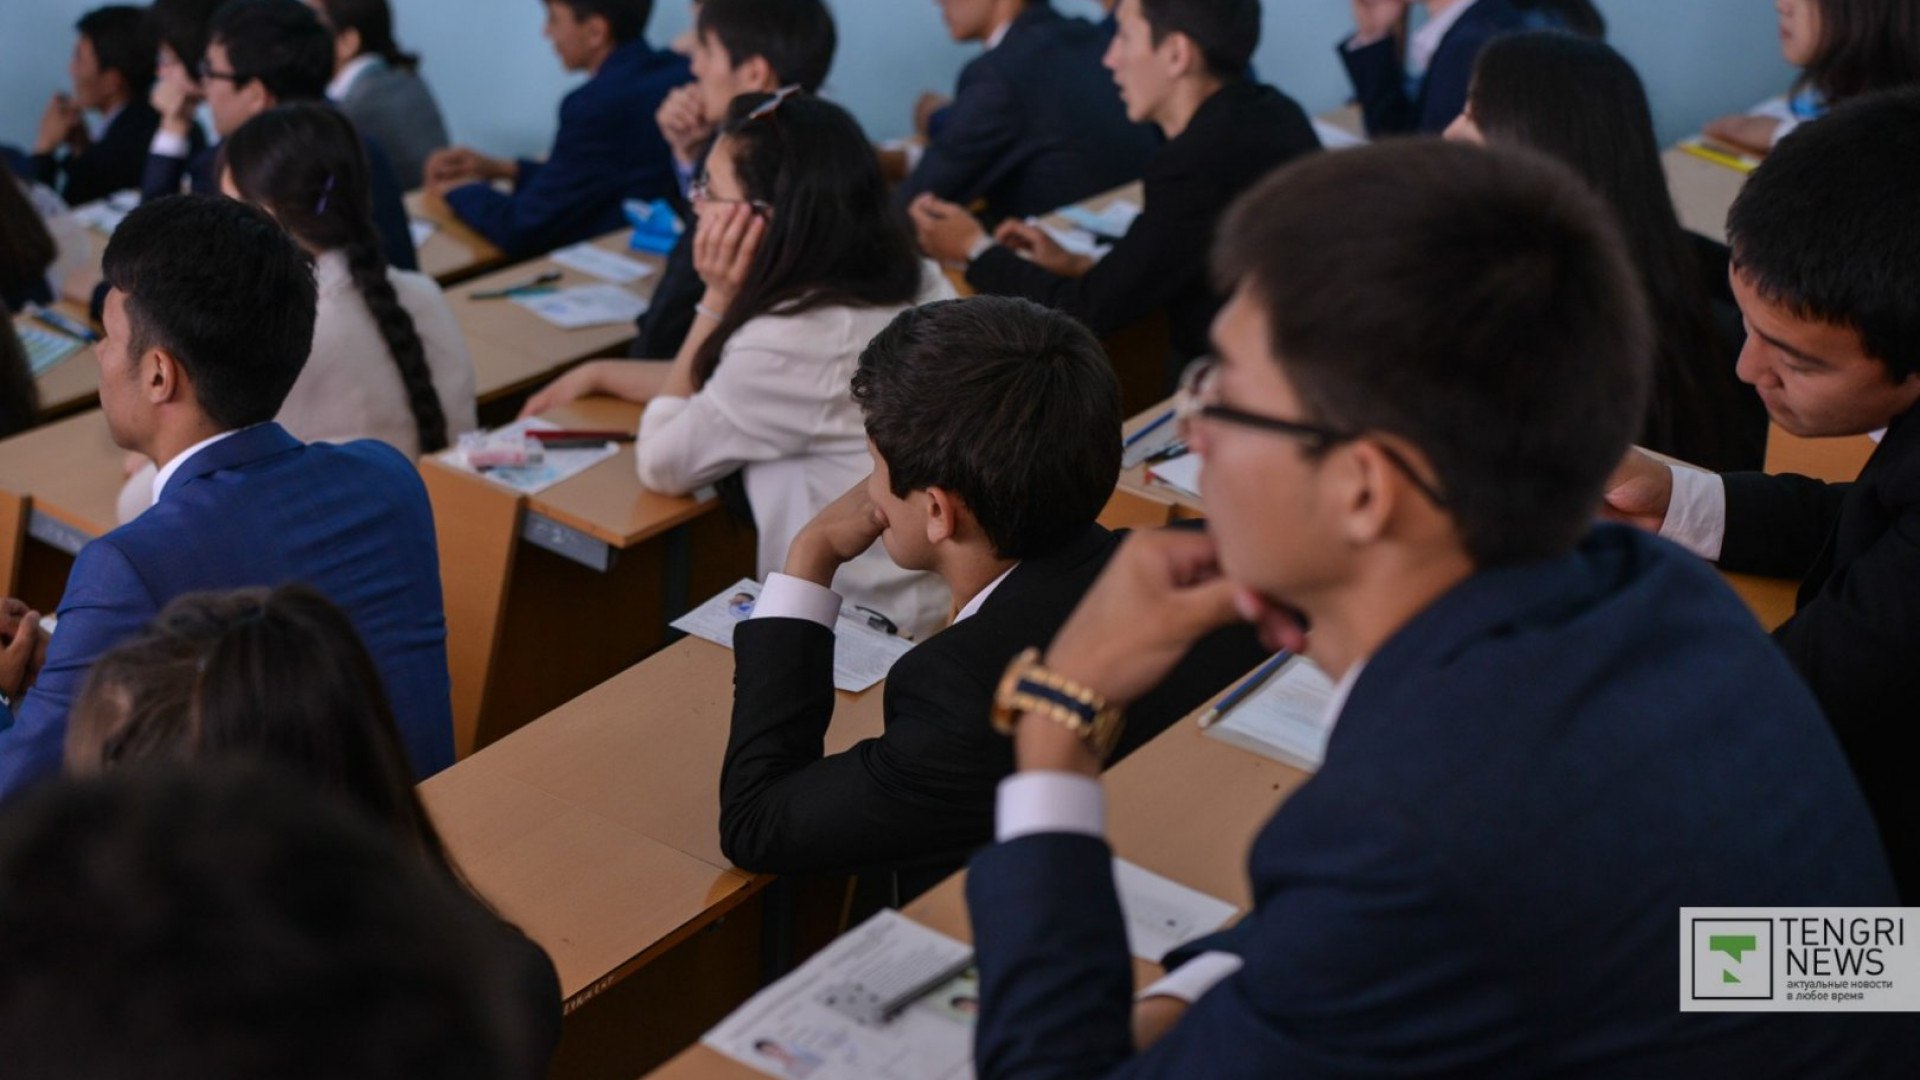 Ғылым және жоғары білім. Квоты для студентов. ЕНТ фото. Обучаться. Картинки преподаватель с тремя казахстанскими студентами.